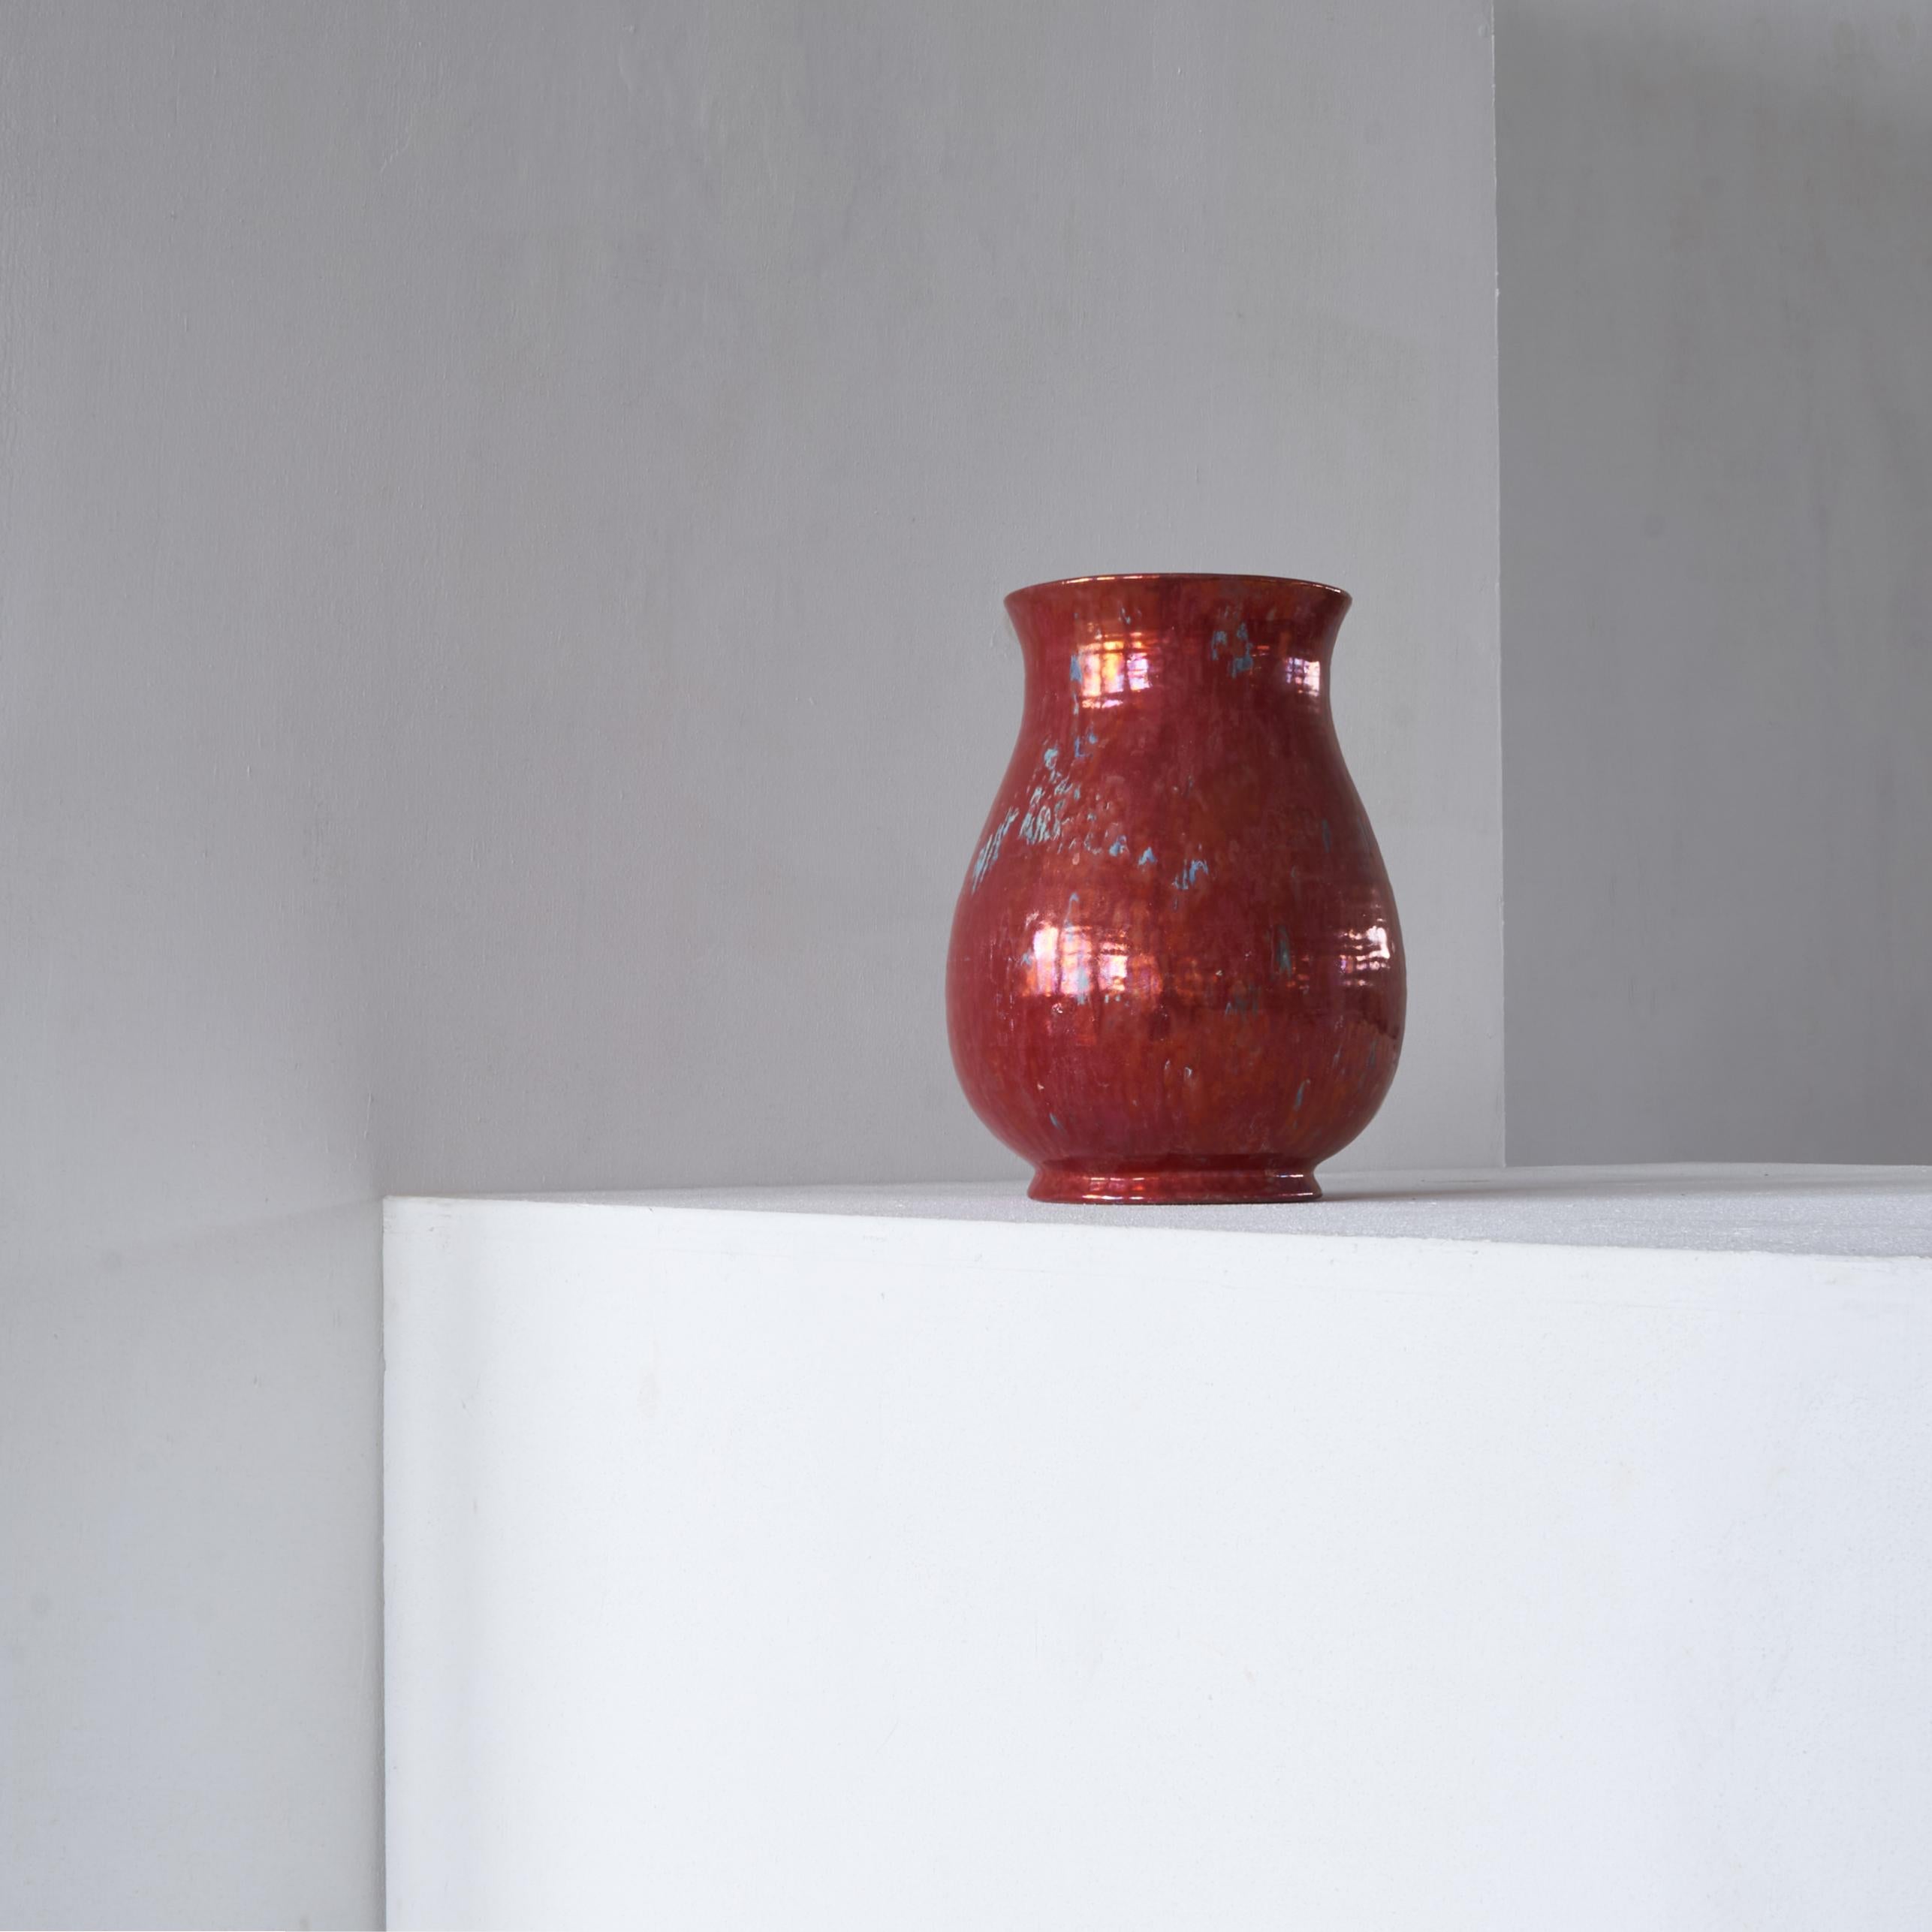 Très grand vase en 'Reflet Metallique' rouge de 'De Porceleyne Fles' Delft, vers 1900.

Grâce au glaçage métallique, ce vase semble incroyablement moderne pour son âge. La hauteur et la forme ajoutent également à cette esthétique moderne. Ce vase